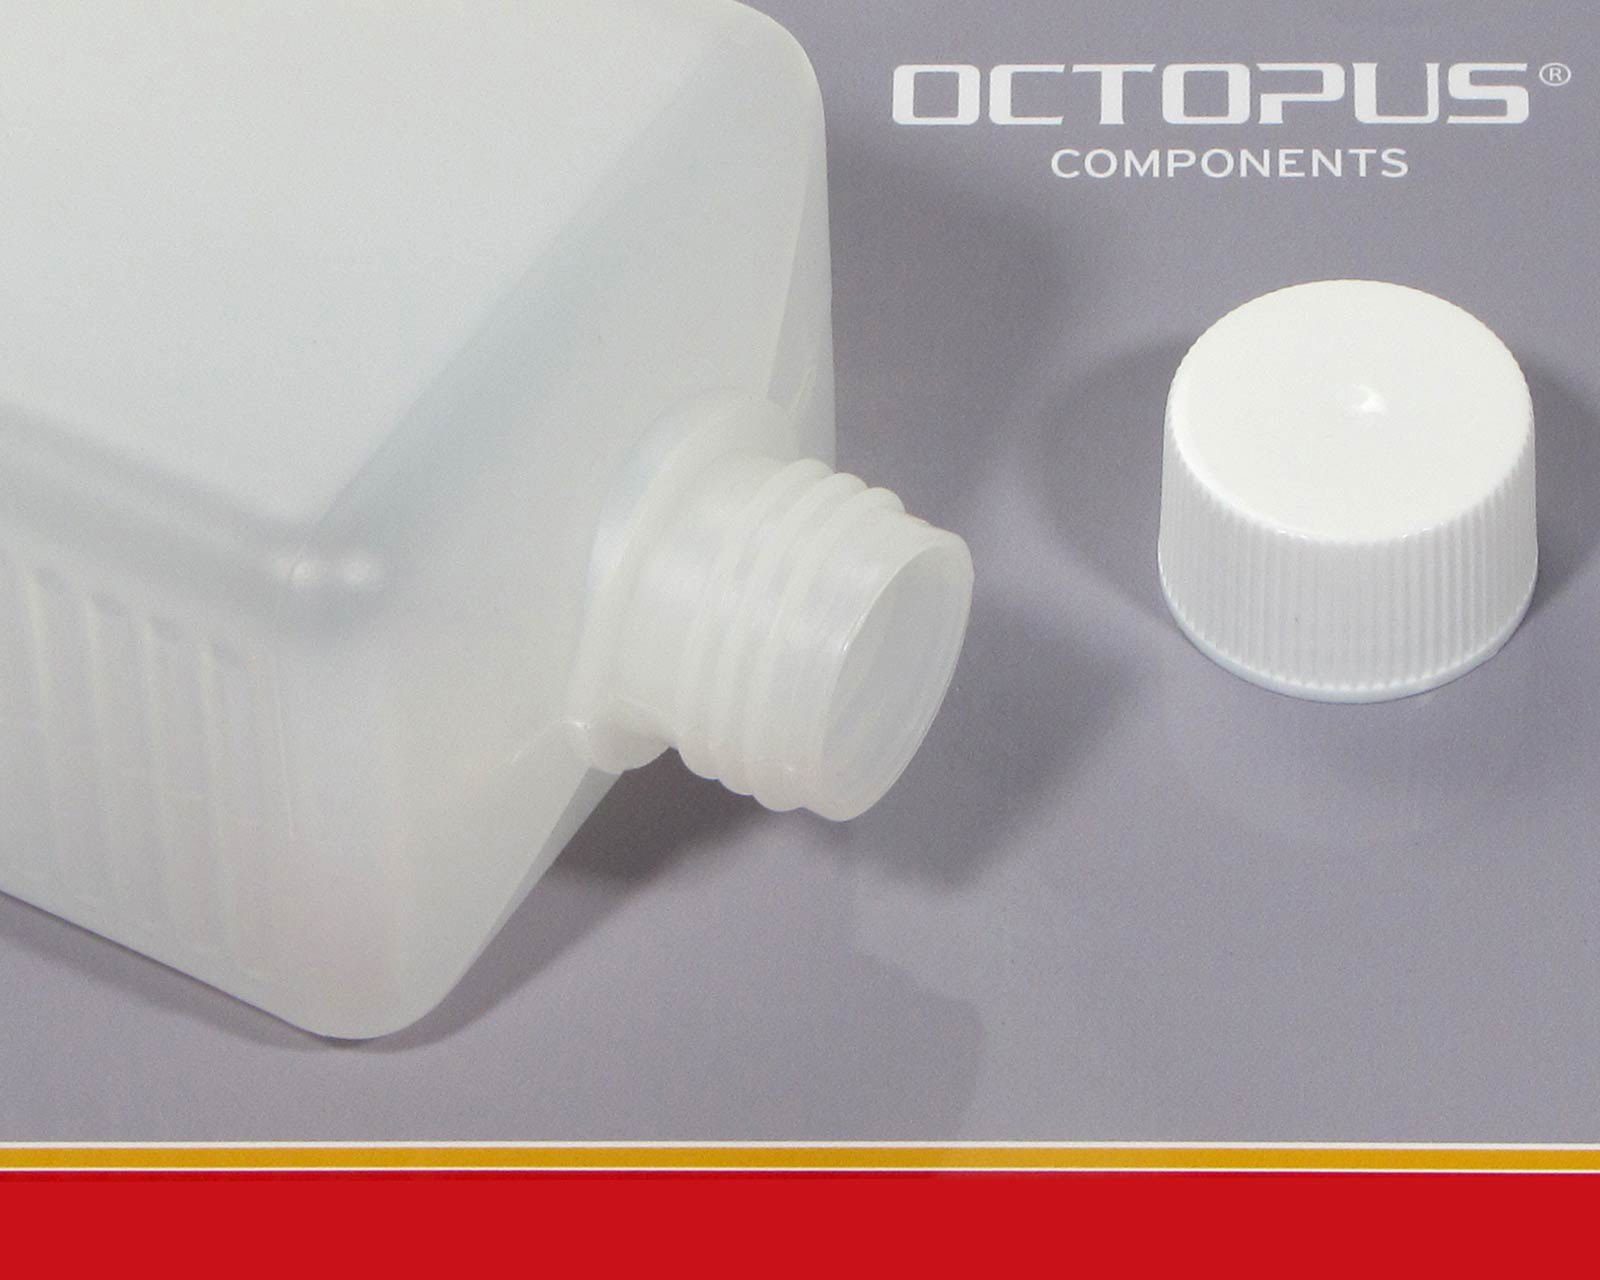 St) Schraubverschlüssen mit (5 ml Kanister OCTOPUS 5 aus 500 weißen eckig HDPE Plastikflaschen